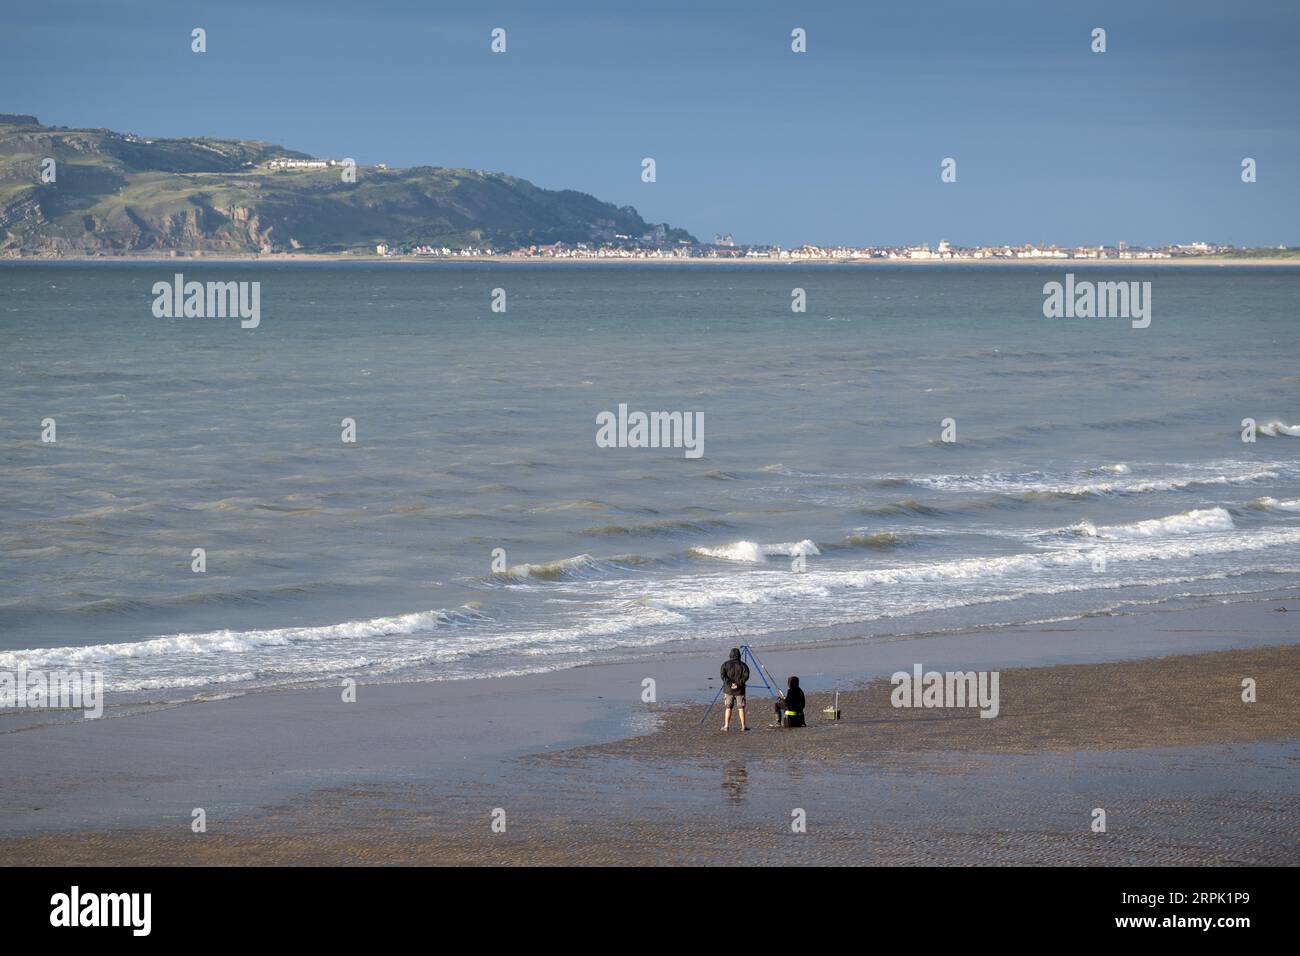 Leute fischen am Strand in Nordwales, mit Landudno und dem Great Orme in der Backgroup. Wales, Großbritannien. Stockfoto